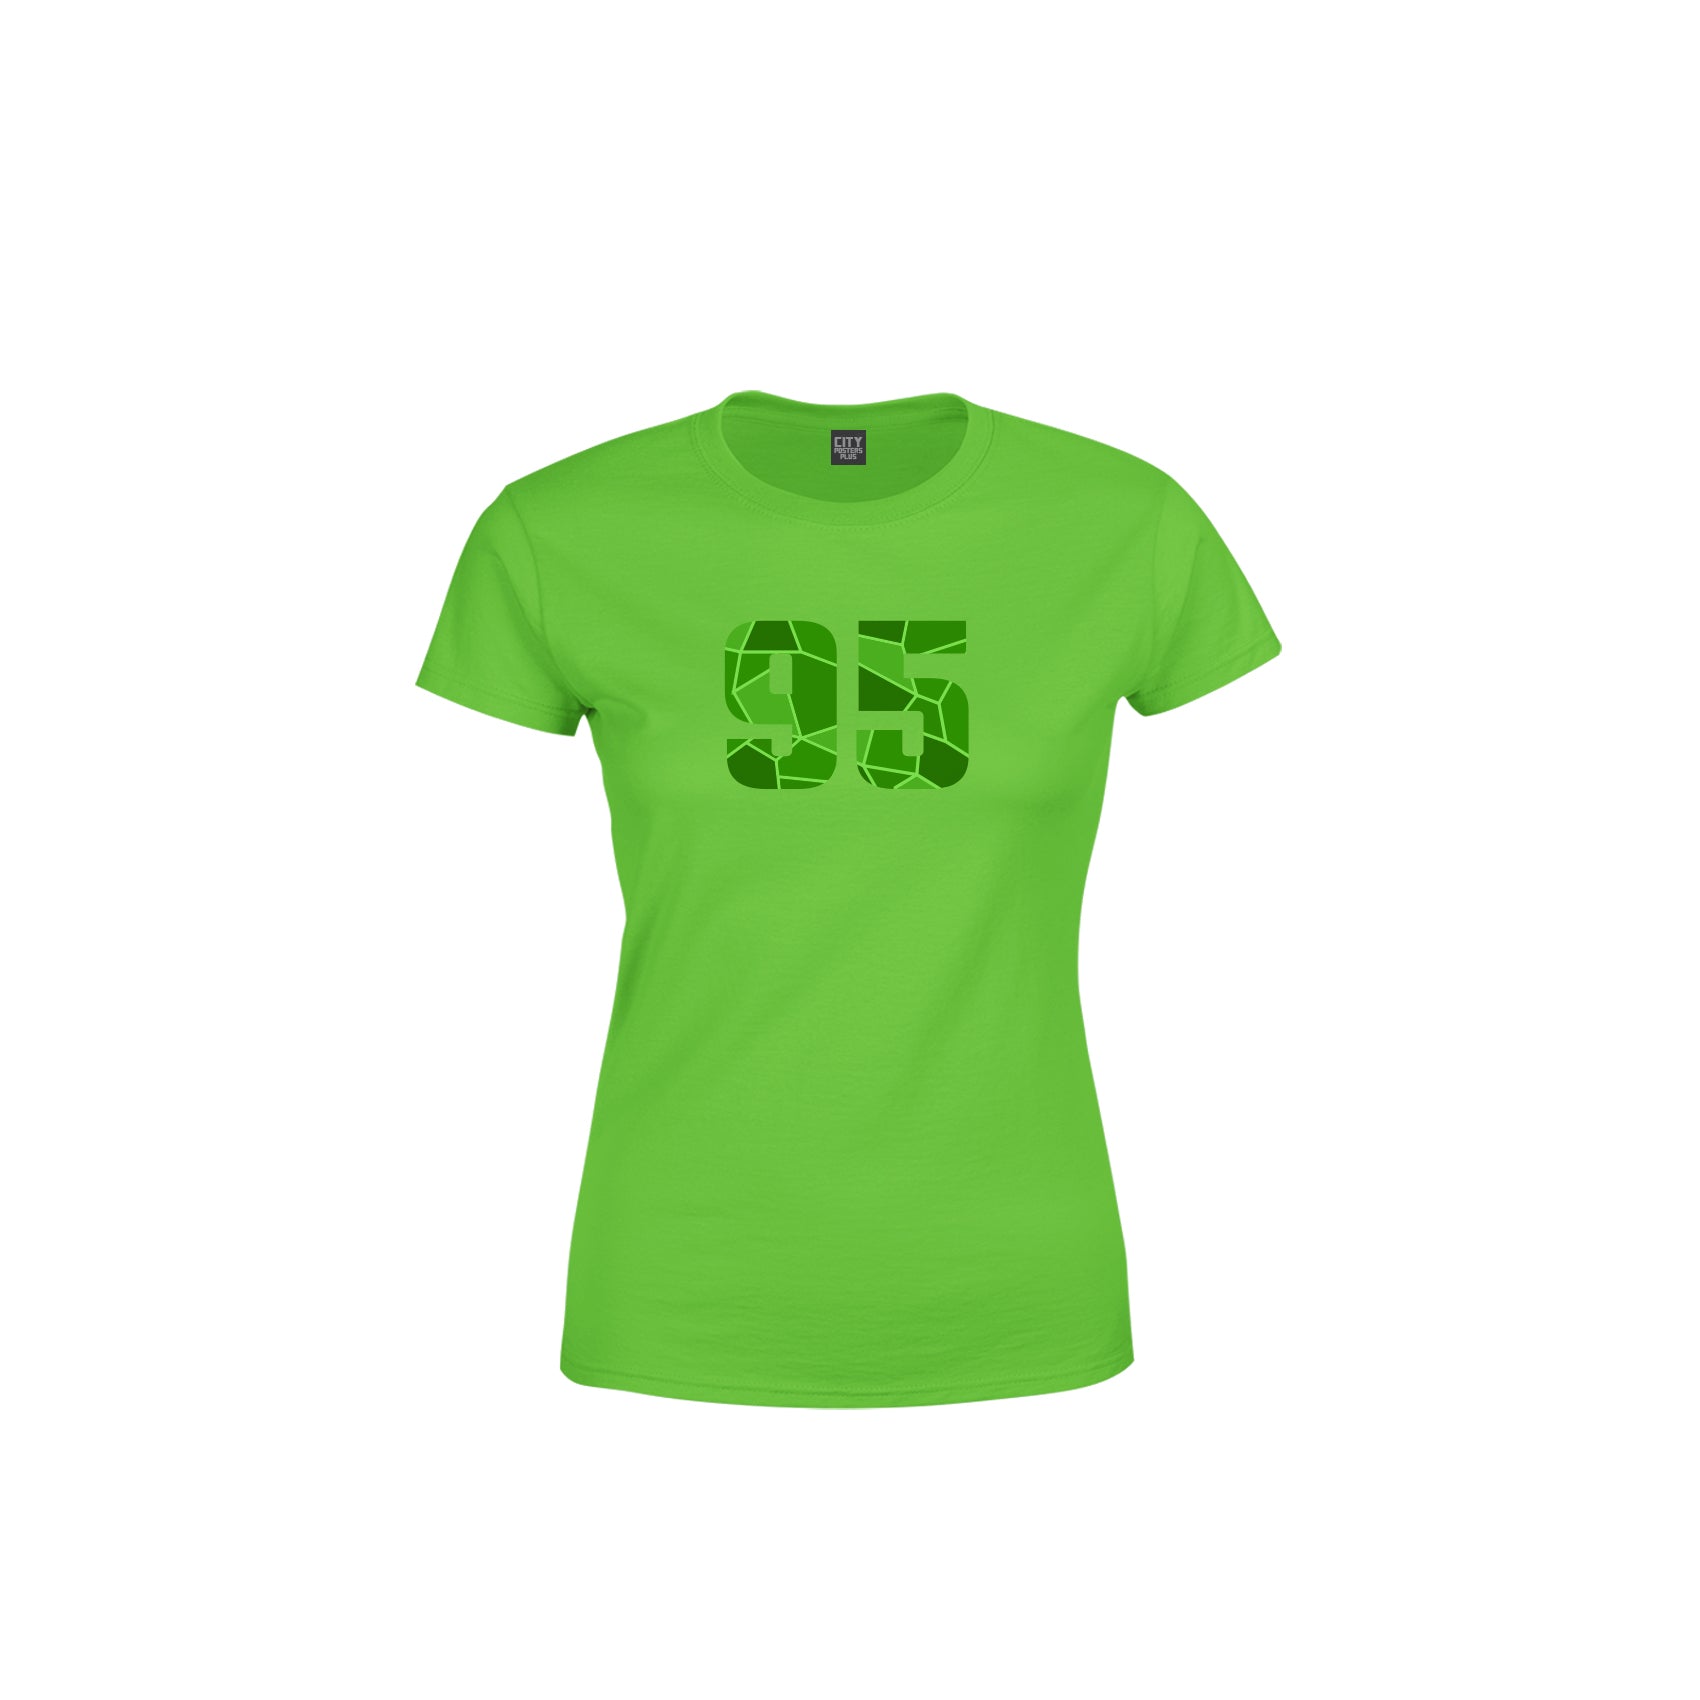 95 Number Women's T-Shirt (Liril Green)